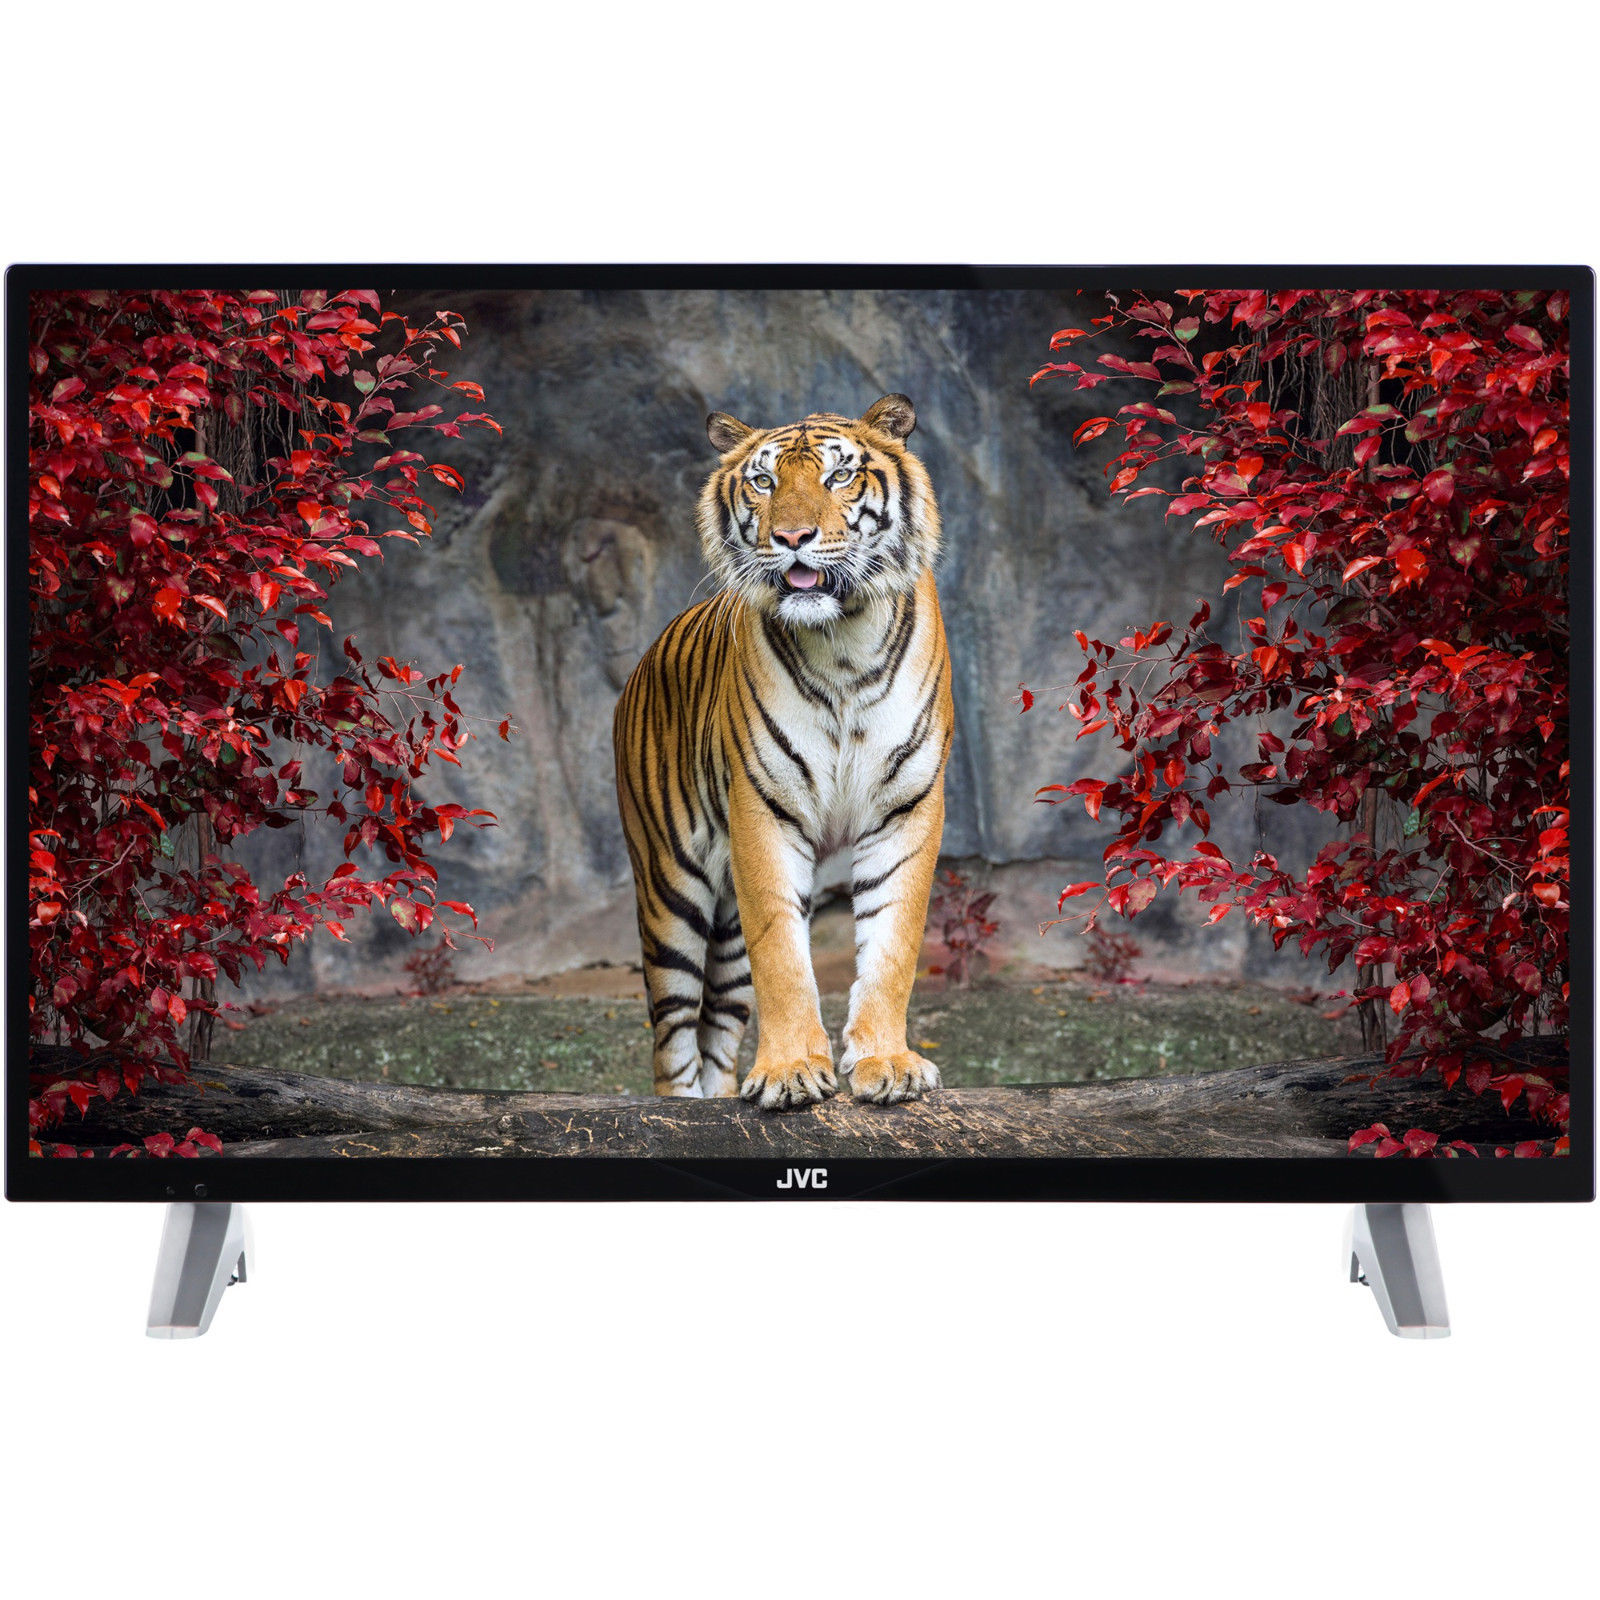 JVC LT-32V4200 32 Zoll LED Fernseher Full HD Triple Tuner 300 PPI MediaPlayer